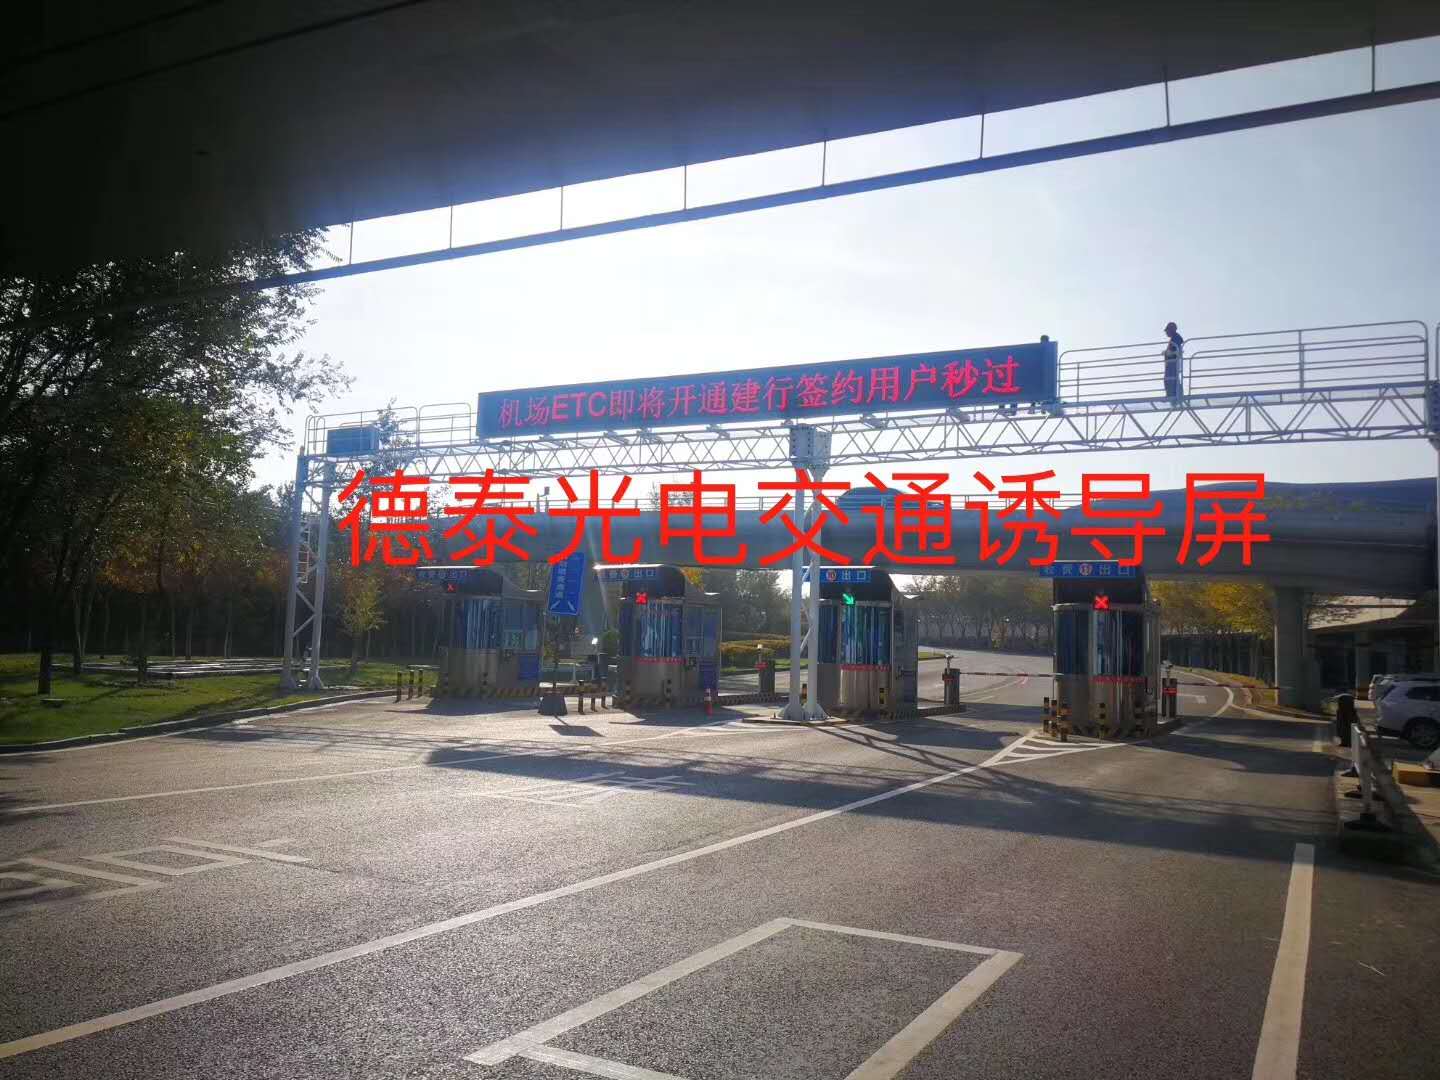 新疆乌鲁木齐新机场LED交通诱导屏安装、调试点亮完成